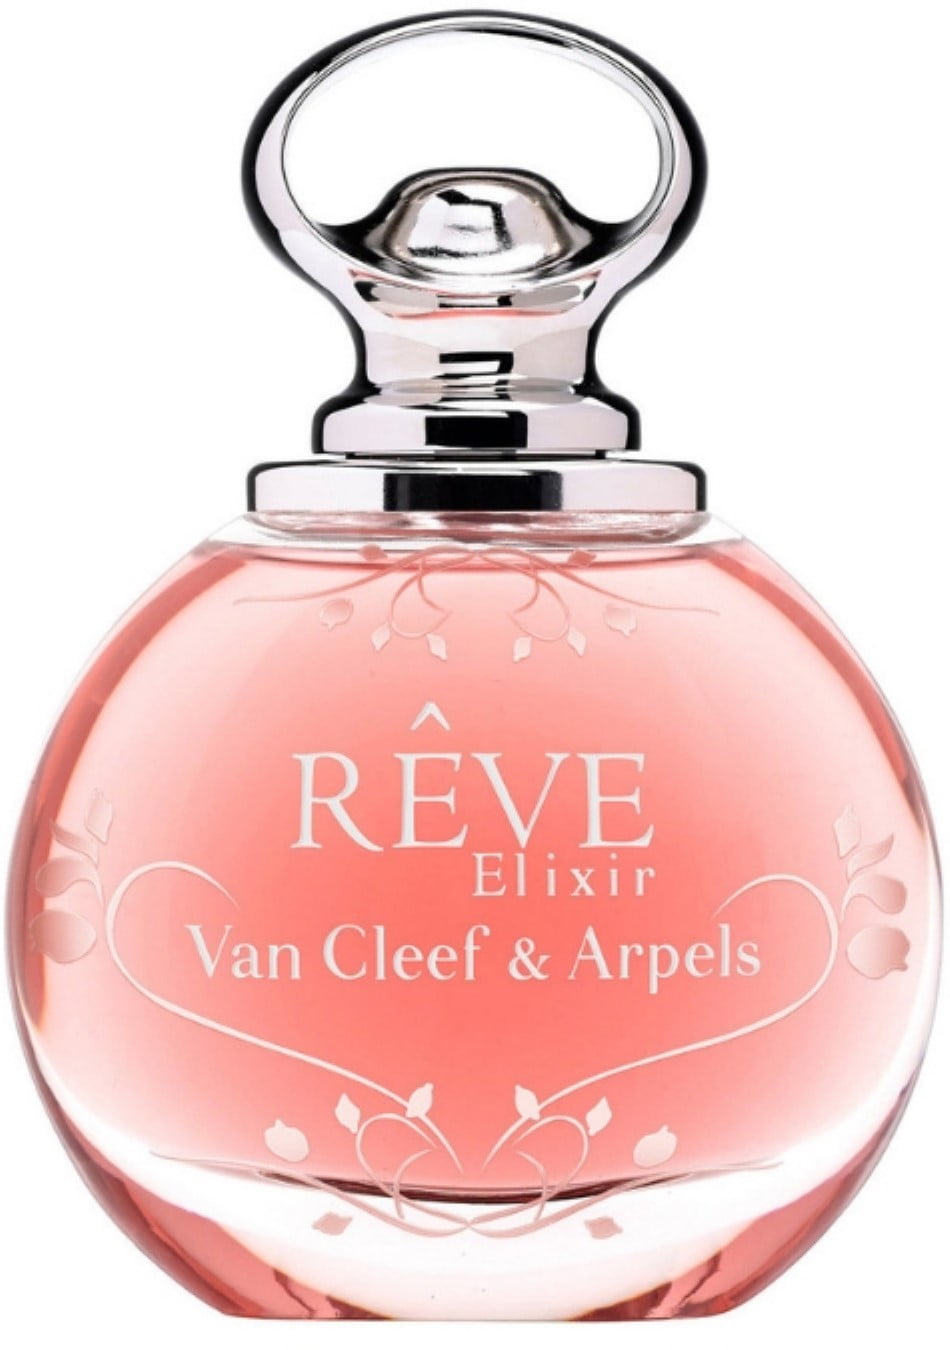 Maak een naam activering Zilver Van Cleef & Arpels, Reve Elixir Eau De Parfum Spray 1.7 oz - Walmart.com